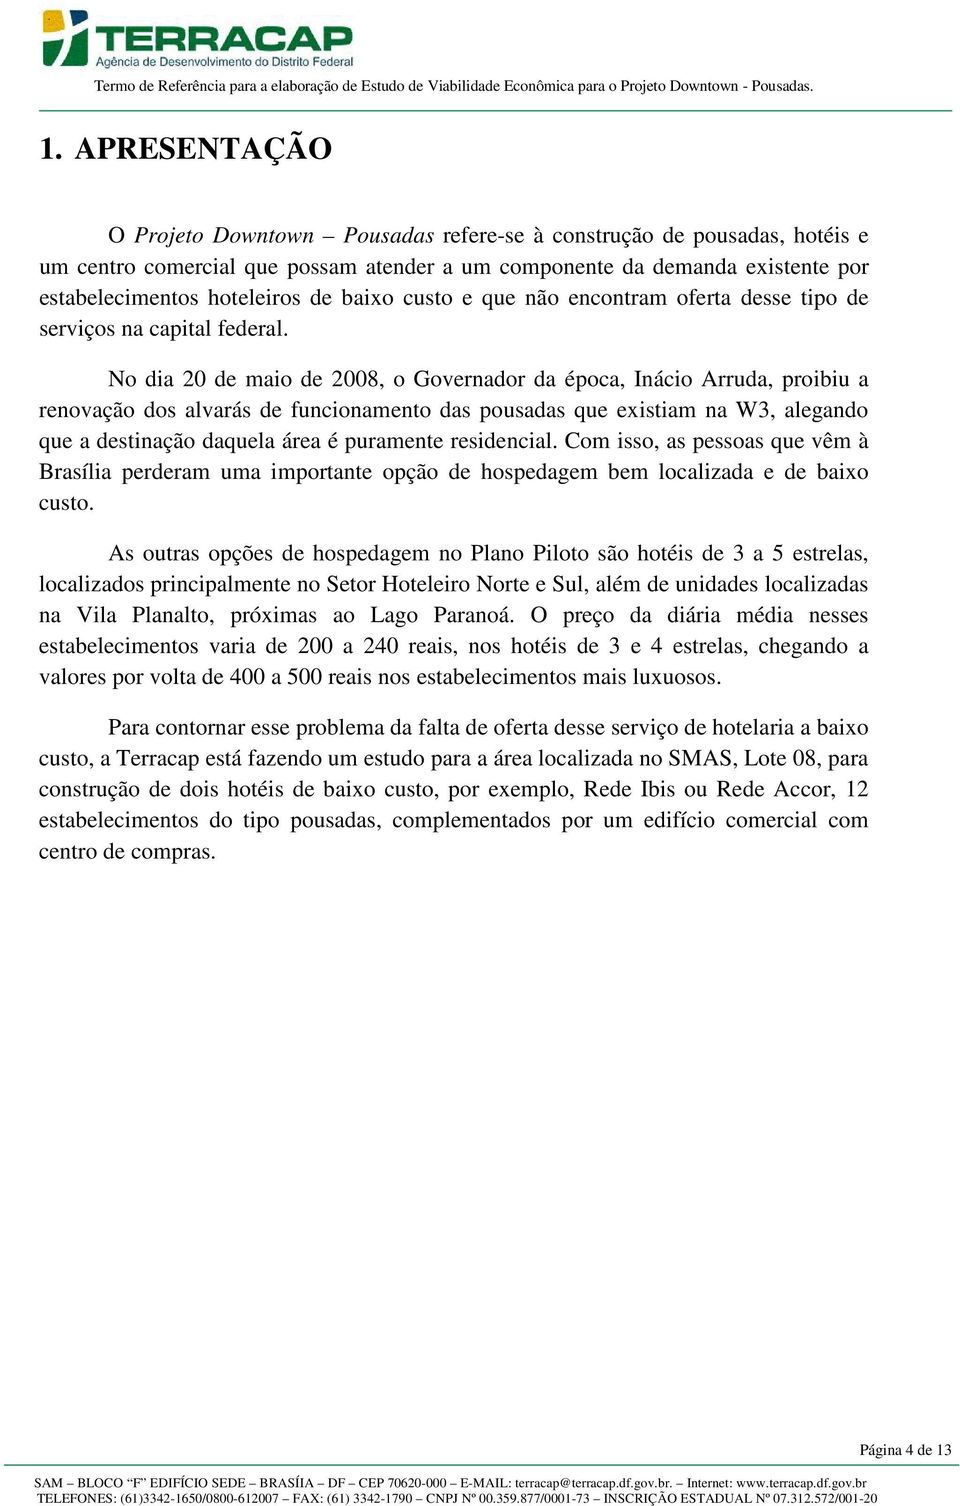 No dia 20 de maio de 2008, o Governador da época, Inácio Arruda, proibiu a renovação dos alvarás de funcionamento das pousadas que existiam na W3, alegando que a destinação daquela área é puramente